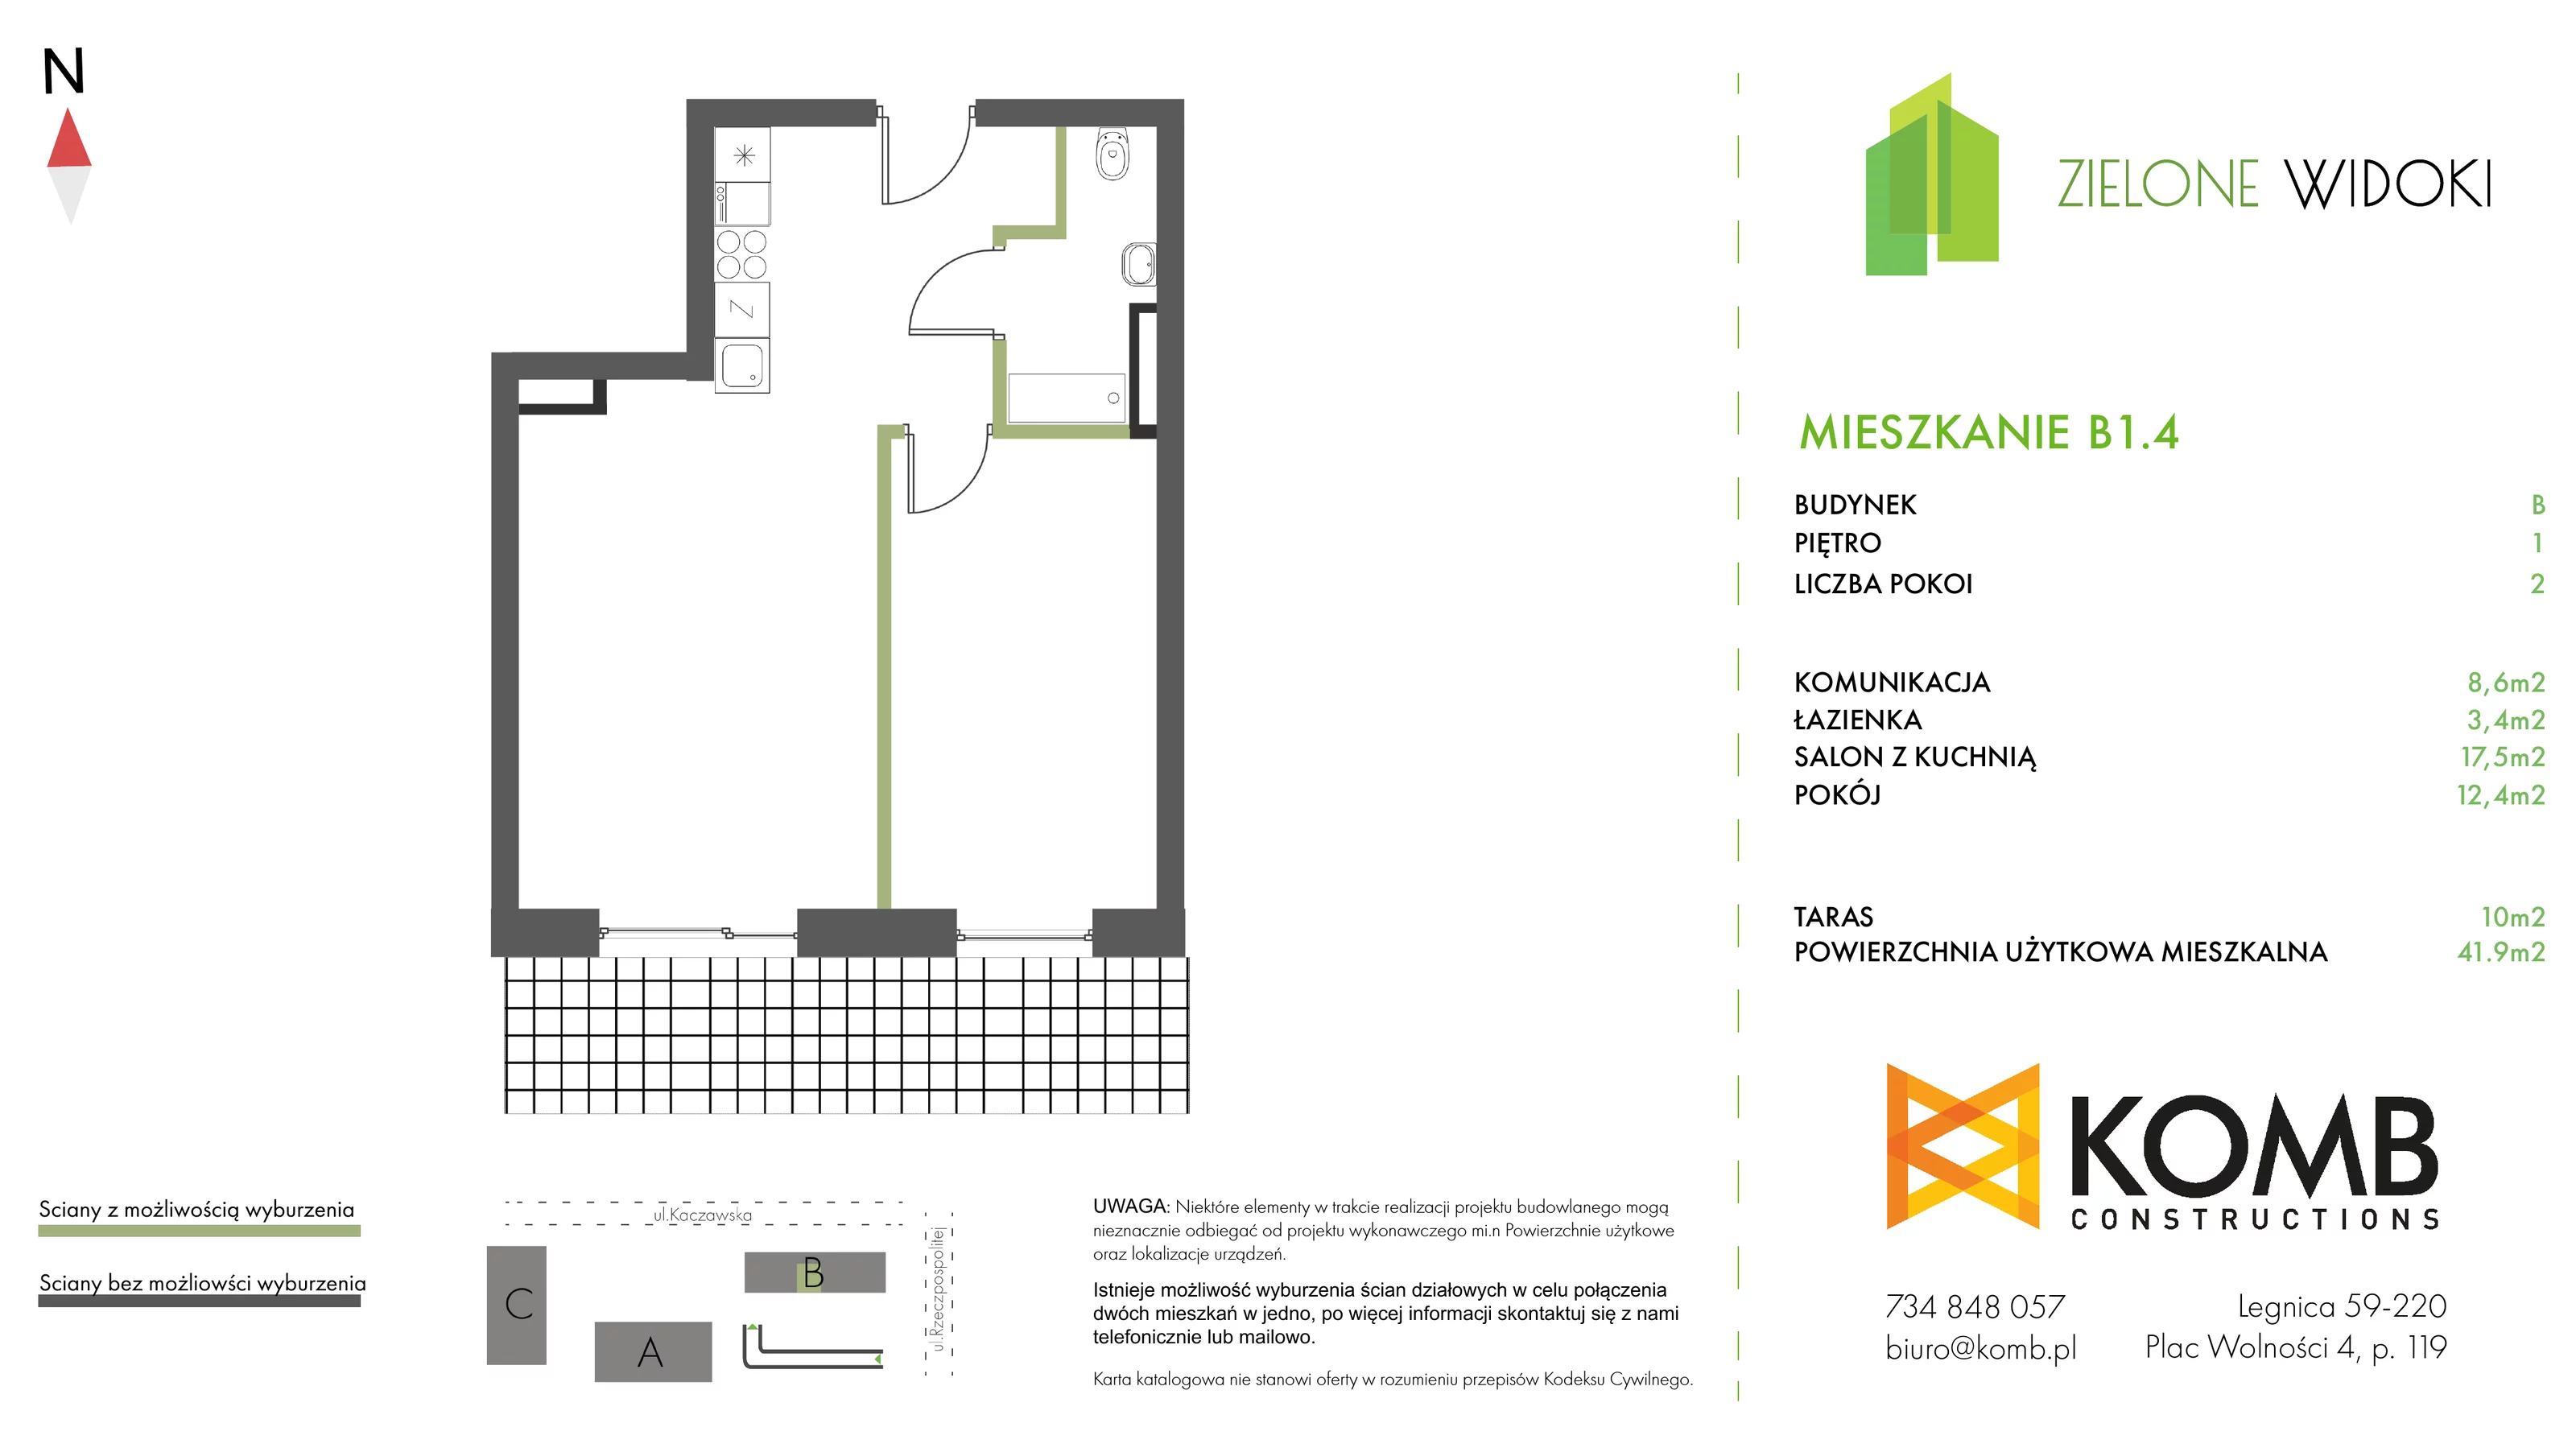 Mieszkanie 41,90 m², piętro 1, oferta nr B1.4, Zielone Widoki, Legnica, Bielany, al. Rzeczypospolitej 23